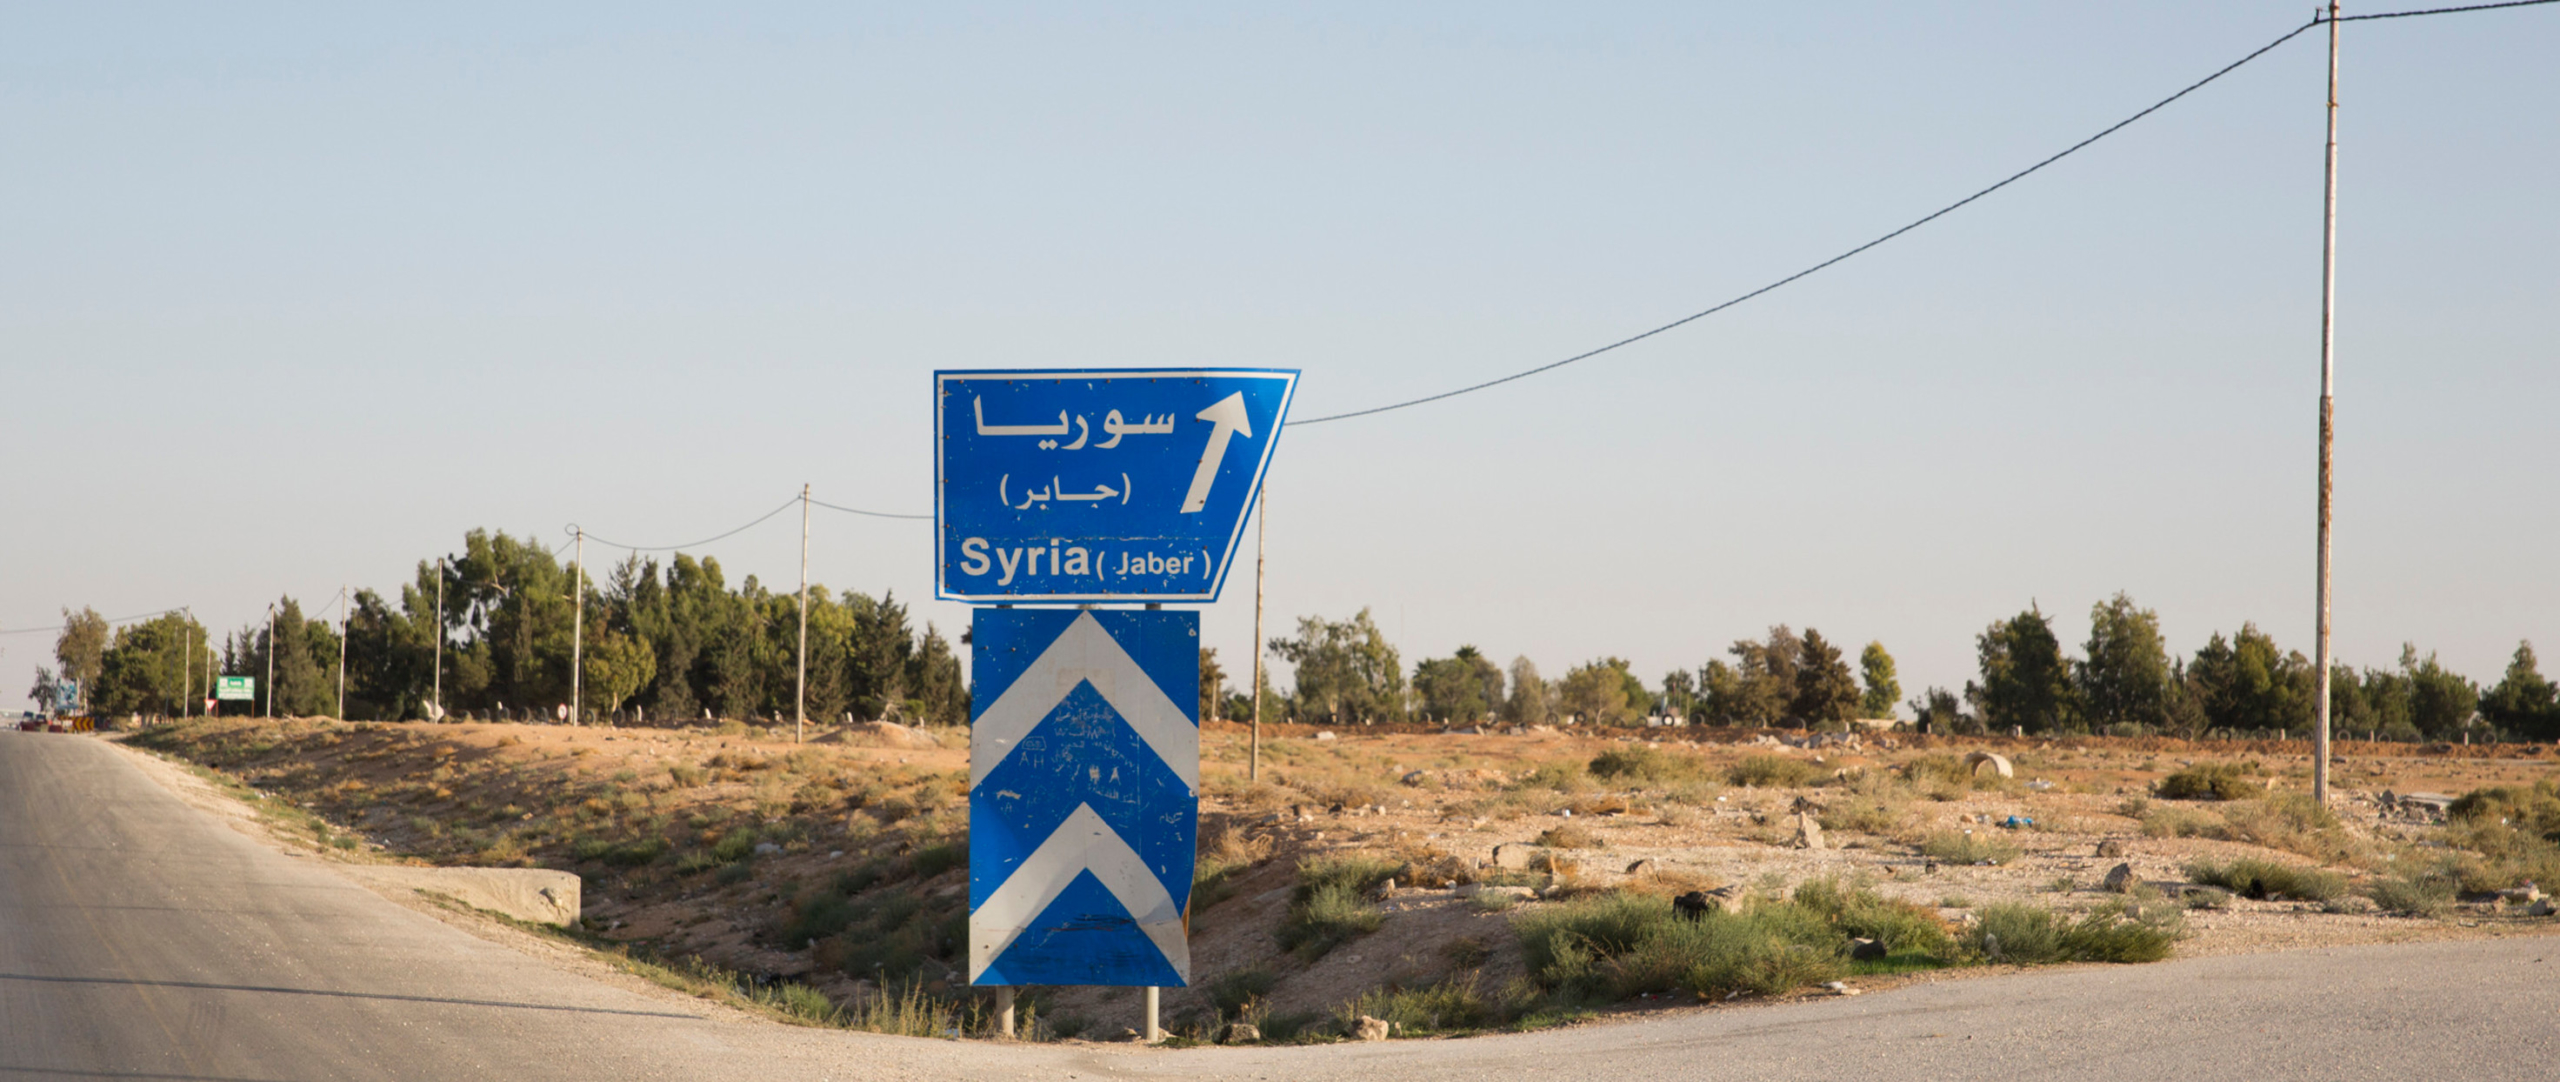 Deir Ezzour En Syrie Une Ville Divisée En Deux Amnesty International